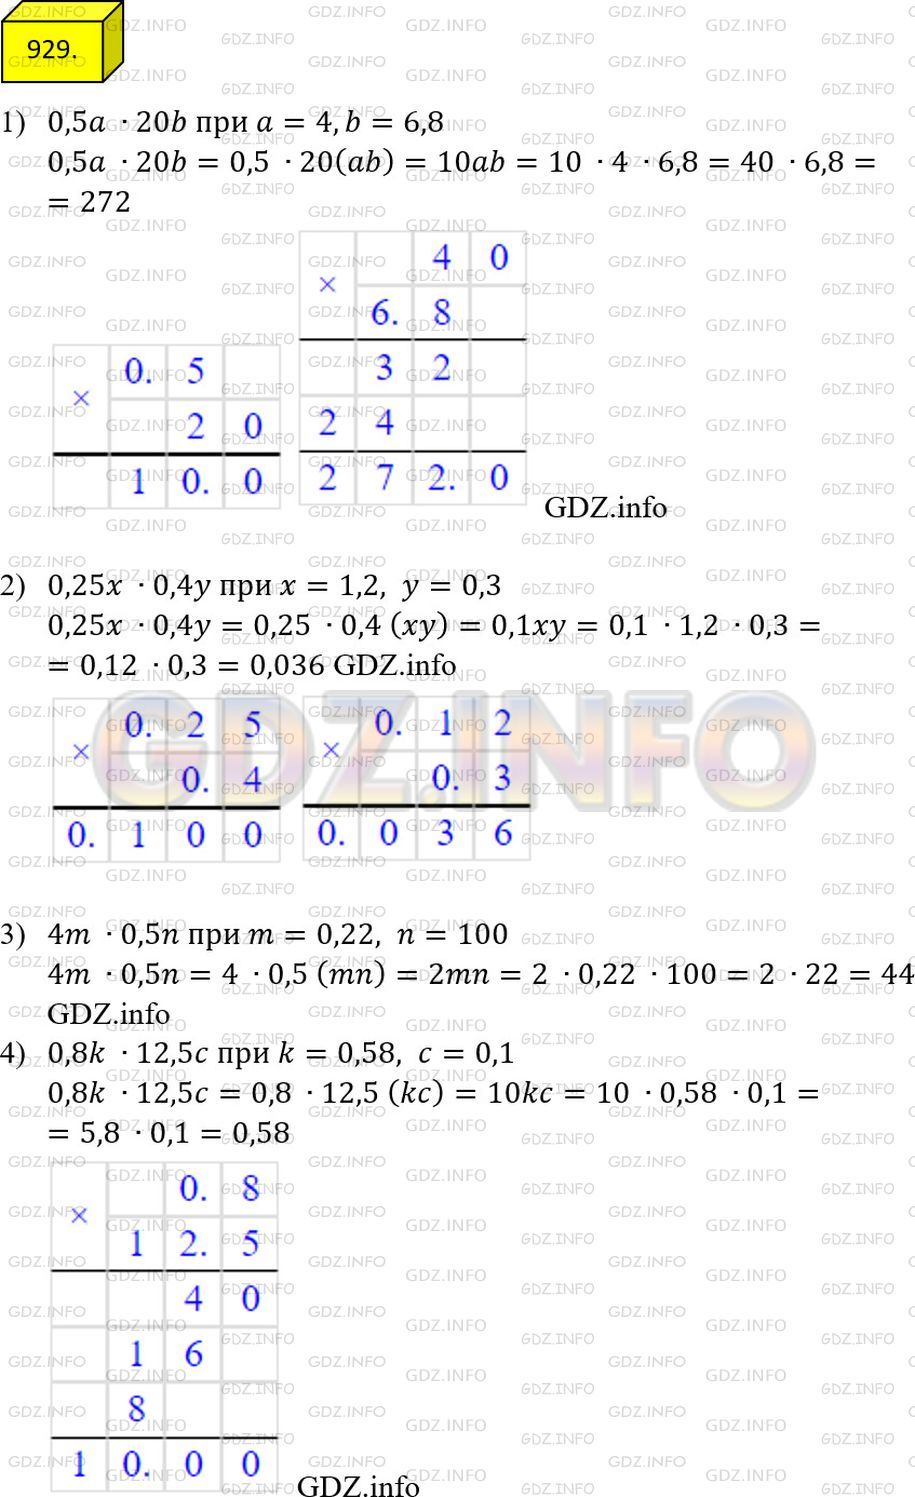 Фото решения 2: Номер №929 из ГДЗ по Математике 5 класс: Мерзляк А.Г. г.